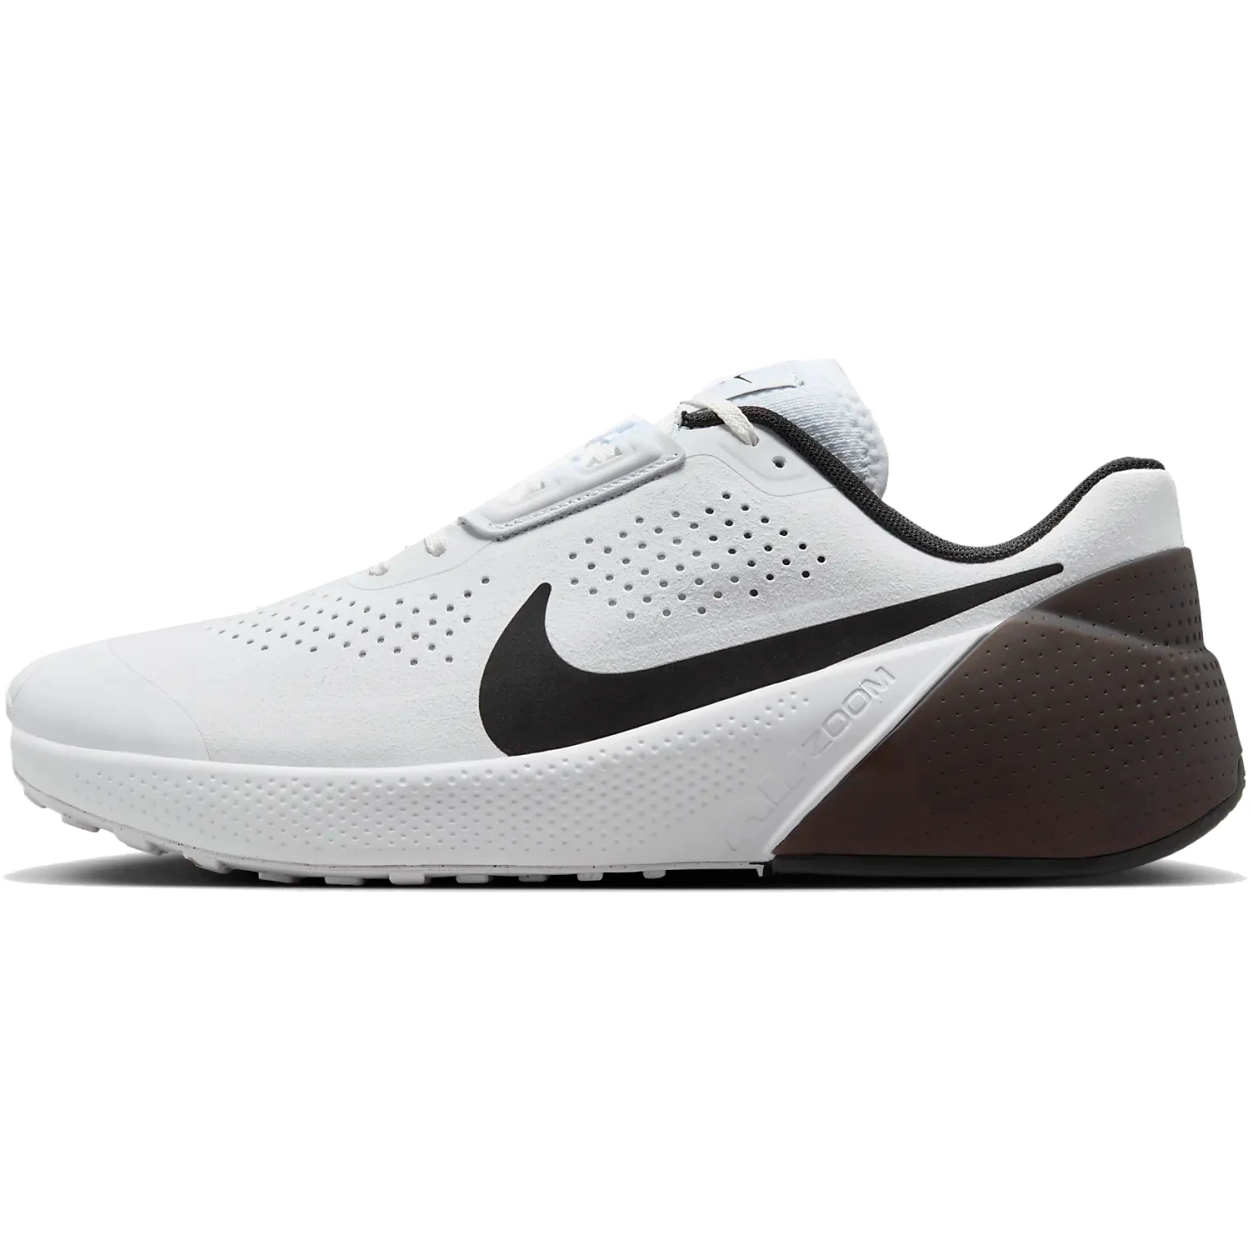 Bild von Nike Air Zoom TR 1 Workout-Schuhe Herren - weiß/schwarz DX9016-103